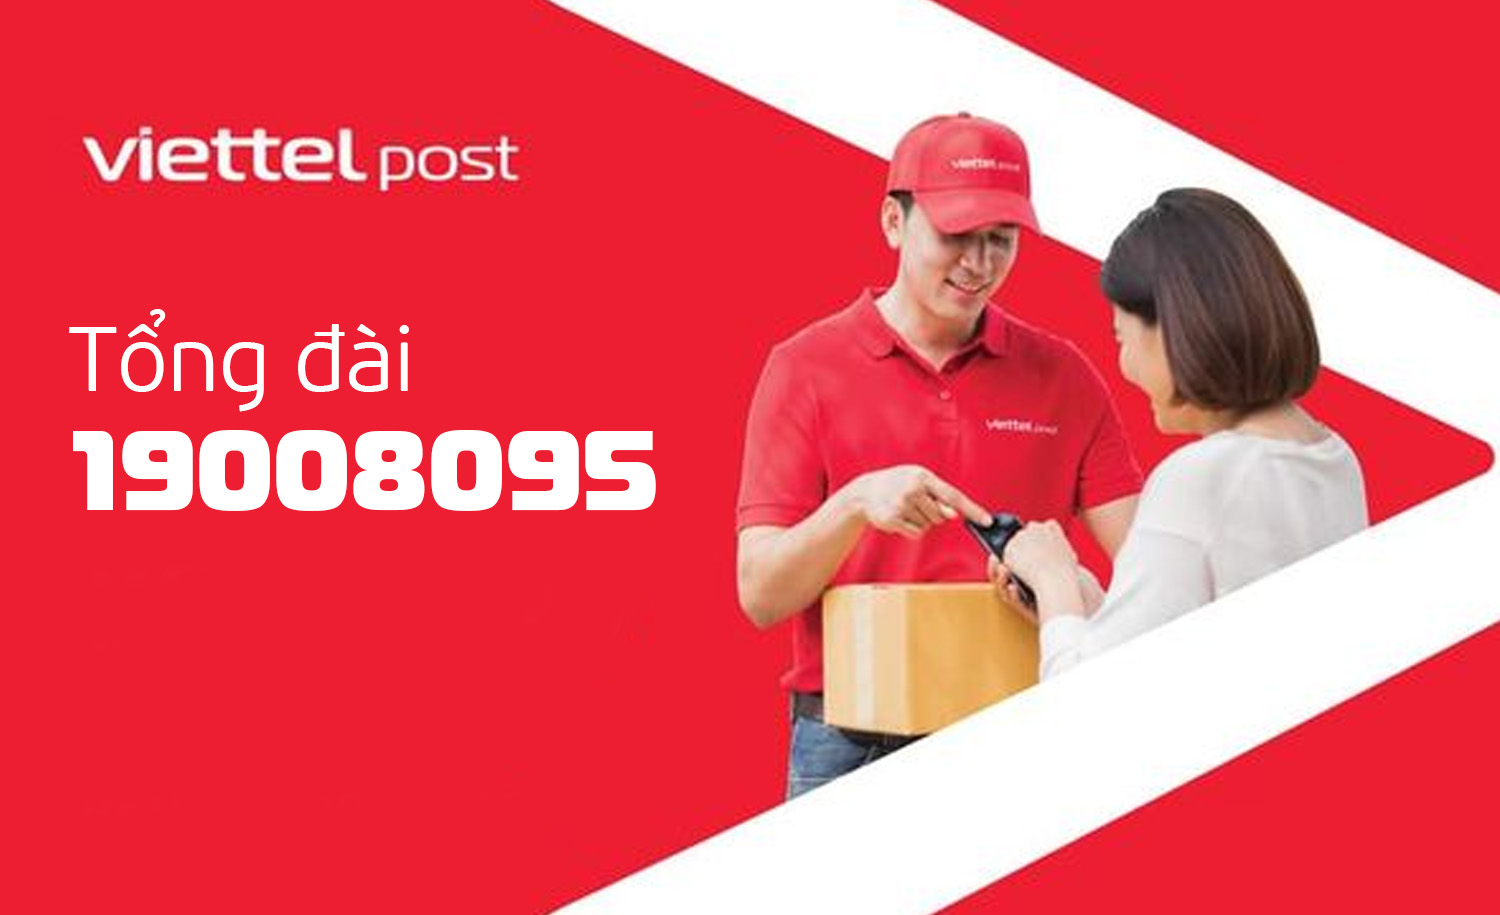 Tổng đài chăm sóc khách hàng Viettel Post giúp bạn sử dụng dịch vụ ...